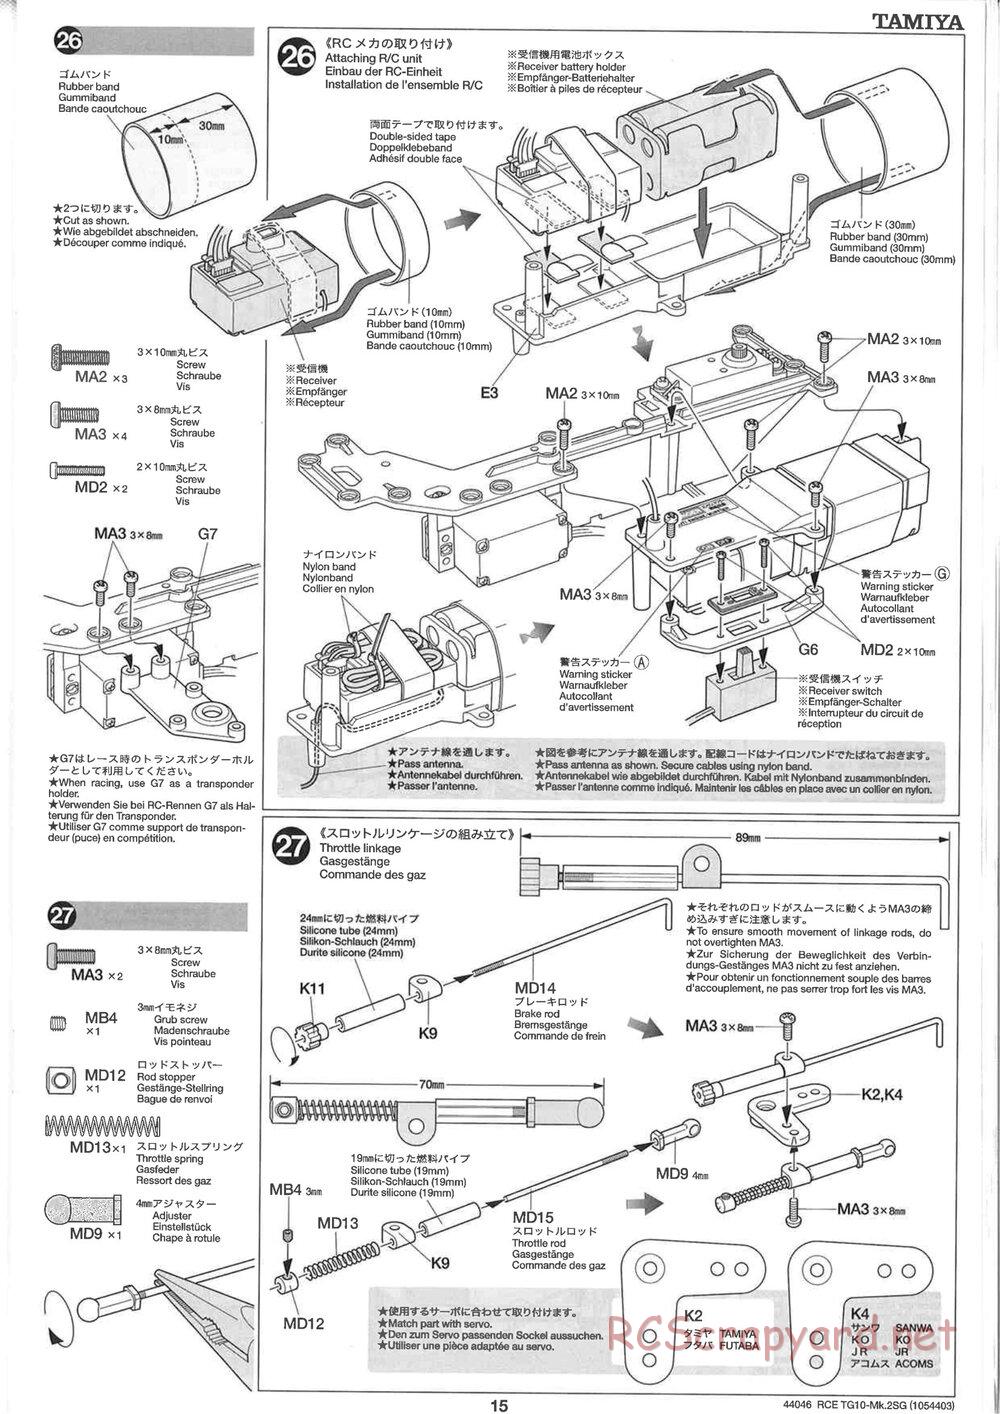 Tamiya - TG10 Mk.2SG Chassis - Manual - Page 15